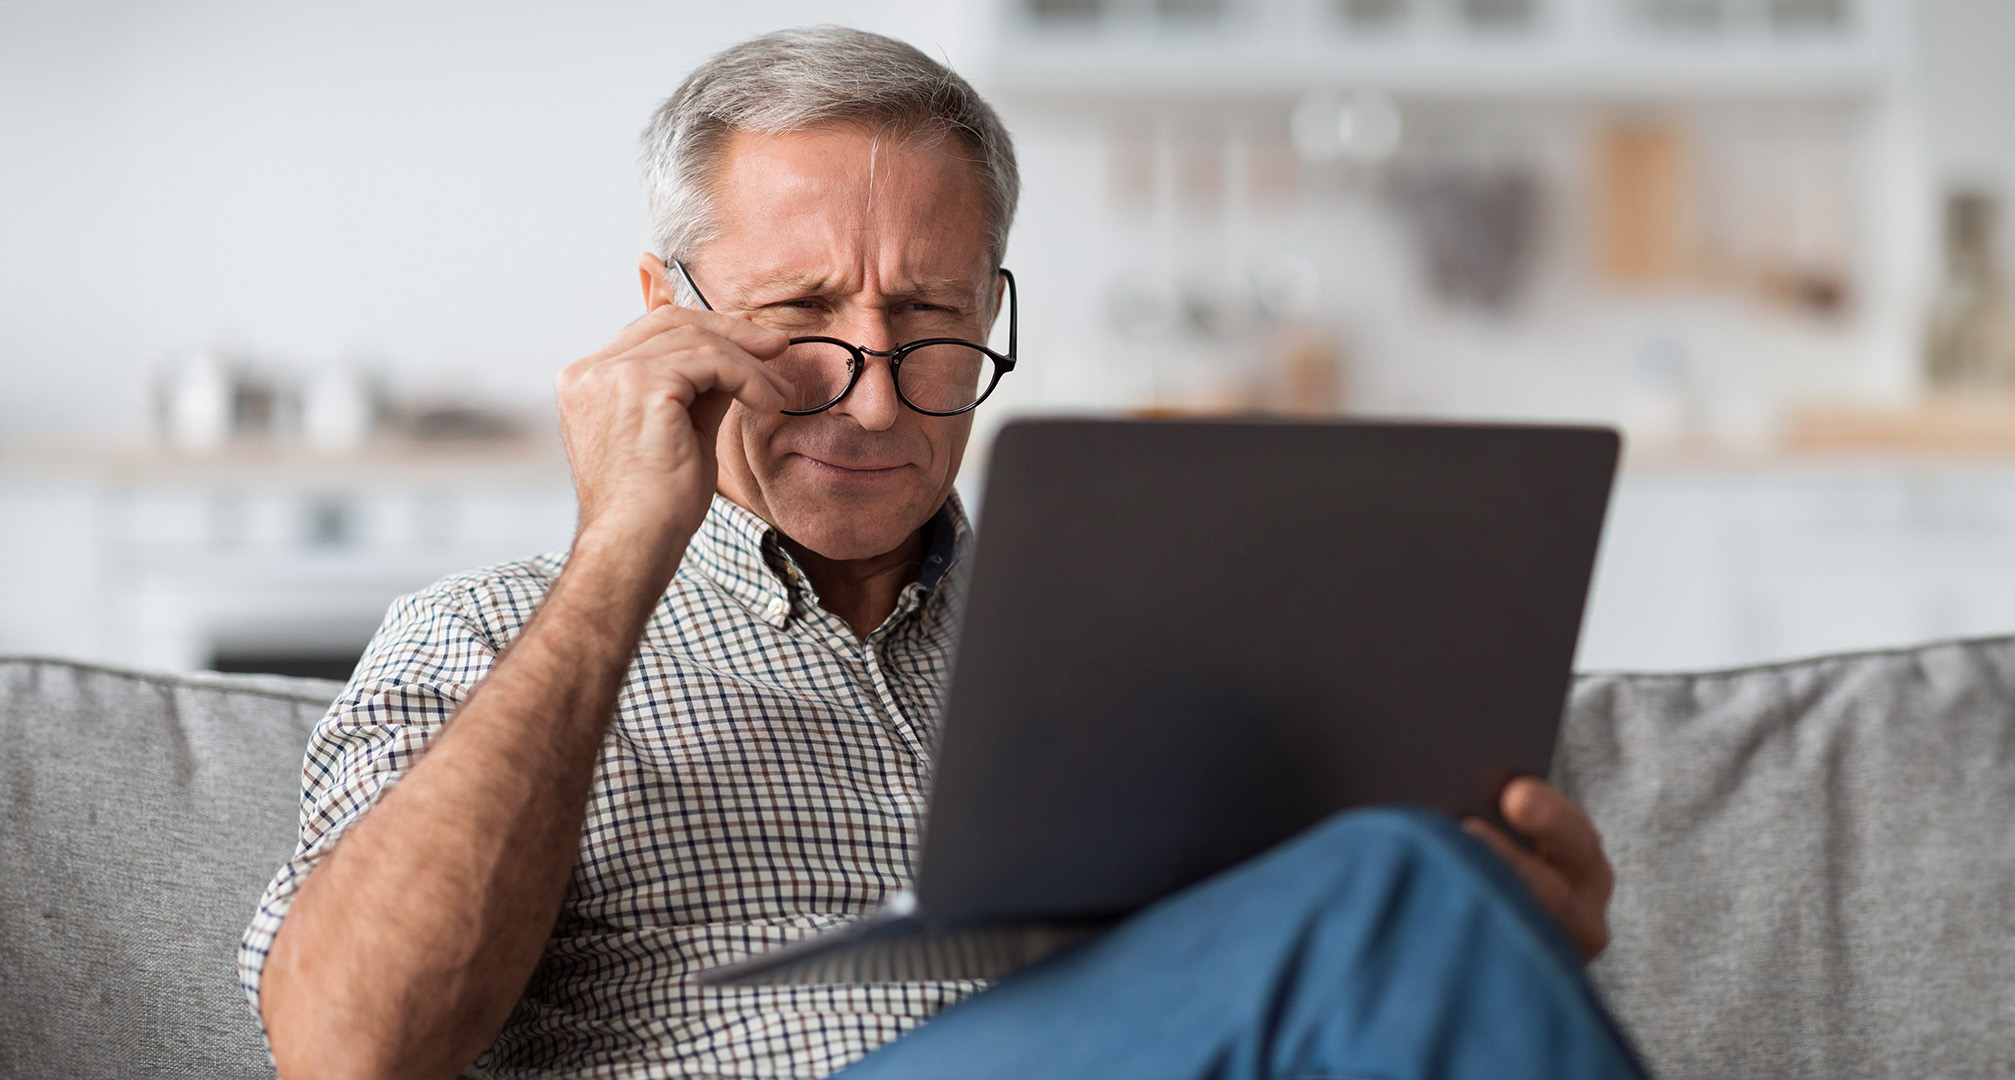 persoană în fața unui laptop purtând ochelari și strâmbând din ochi